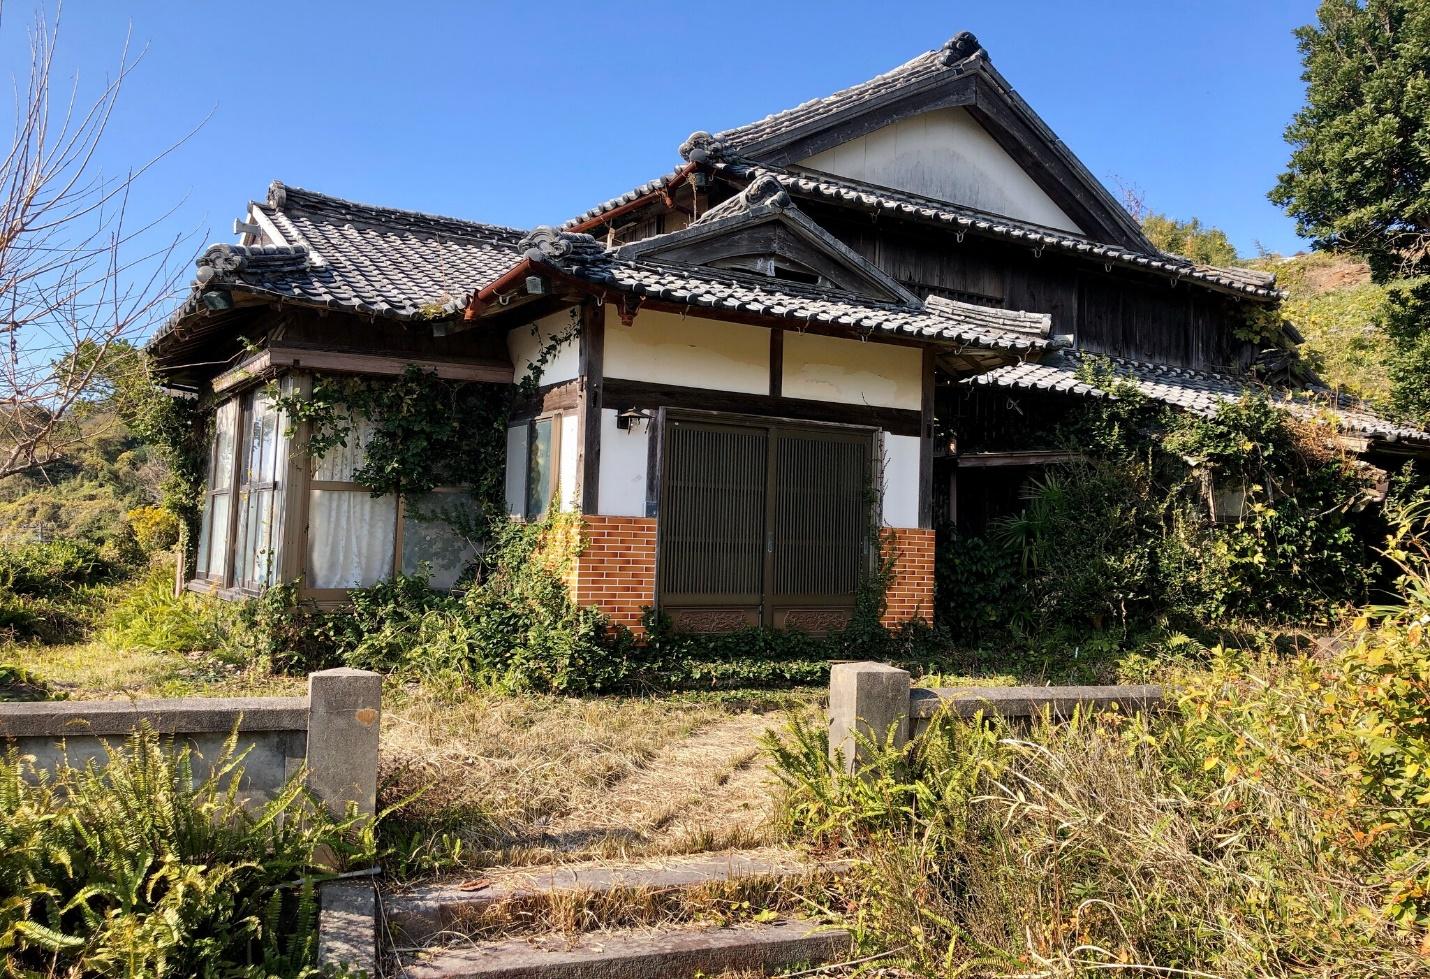 Chuyện ngược đời ở Nhật Bản: Nơi đông đúc, chỗ nhiều nhà bị bỏ hoang, chính quyền rao bán chỉ từ 11 triệu đồng vẫn hiếm người mua - Ảnh 1.